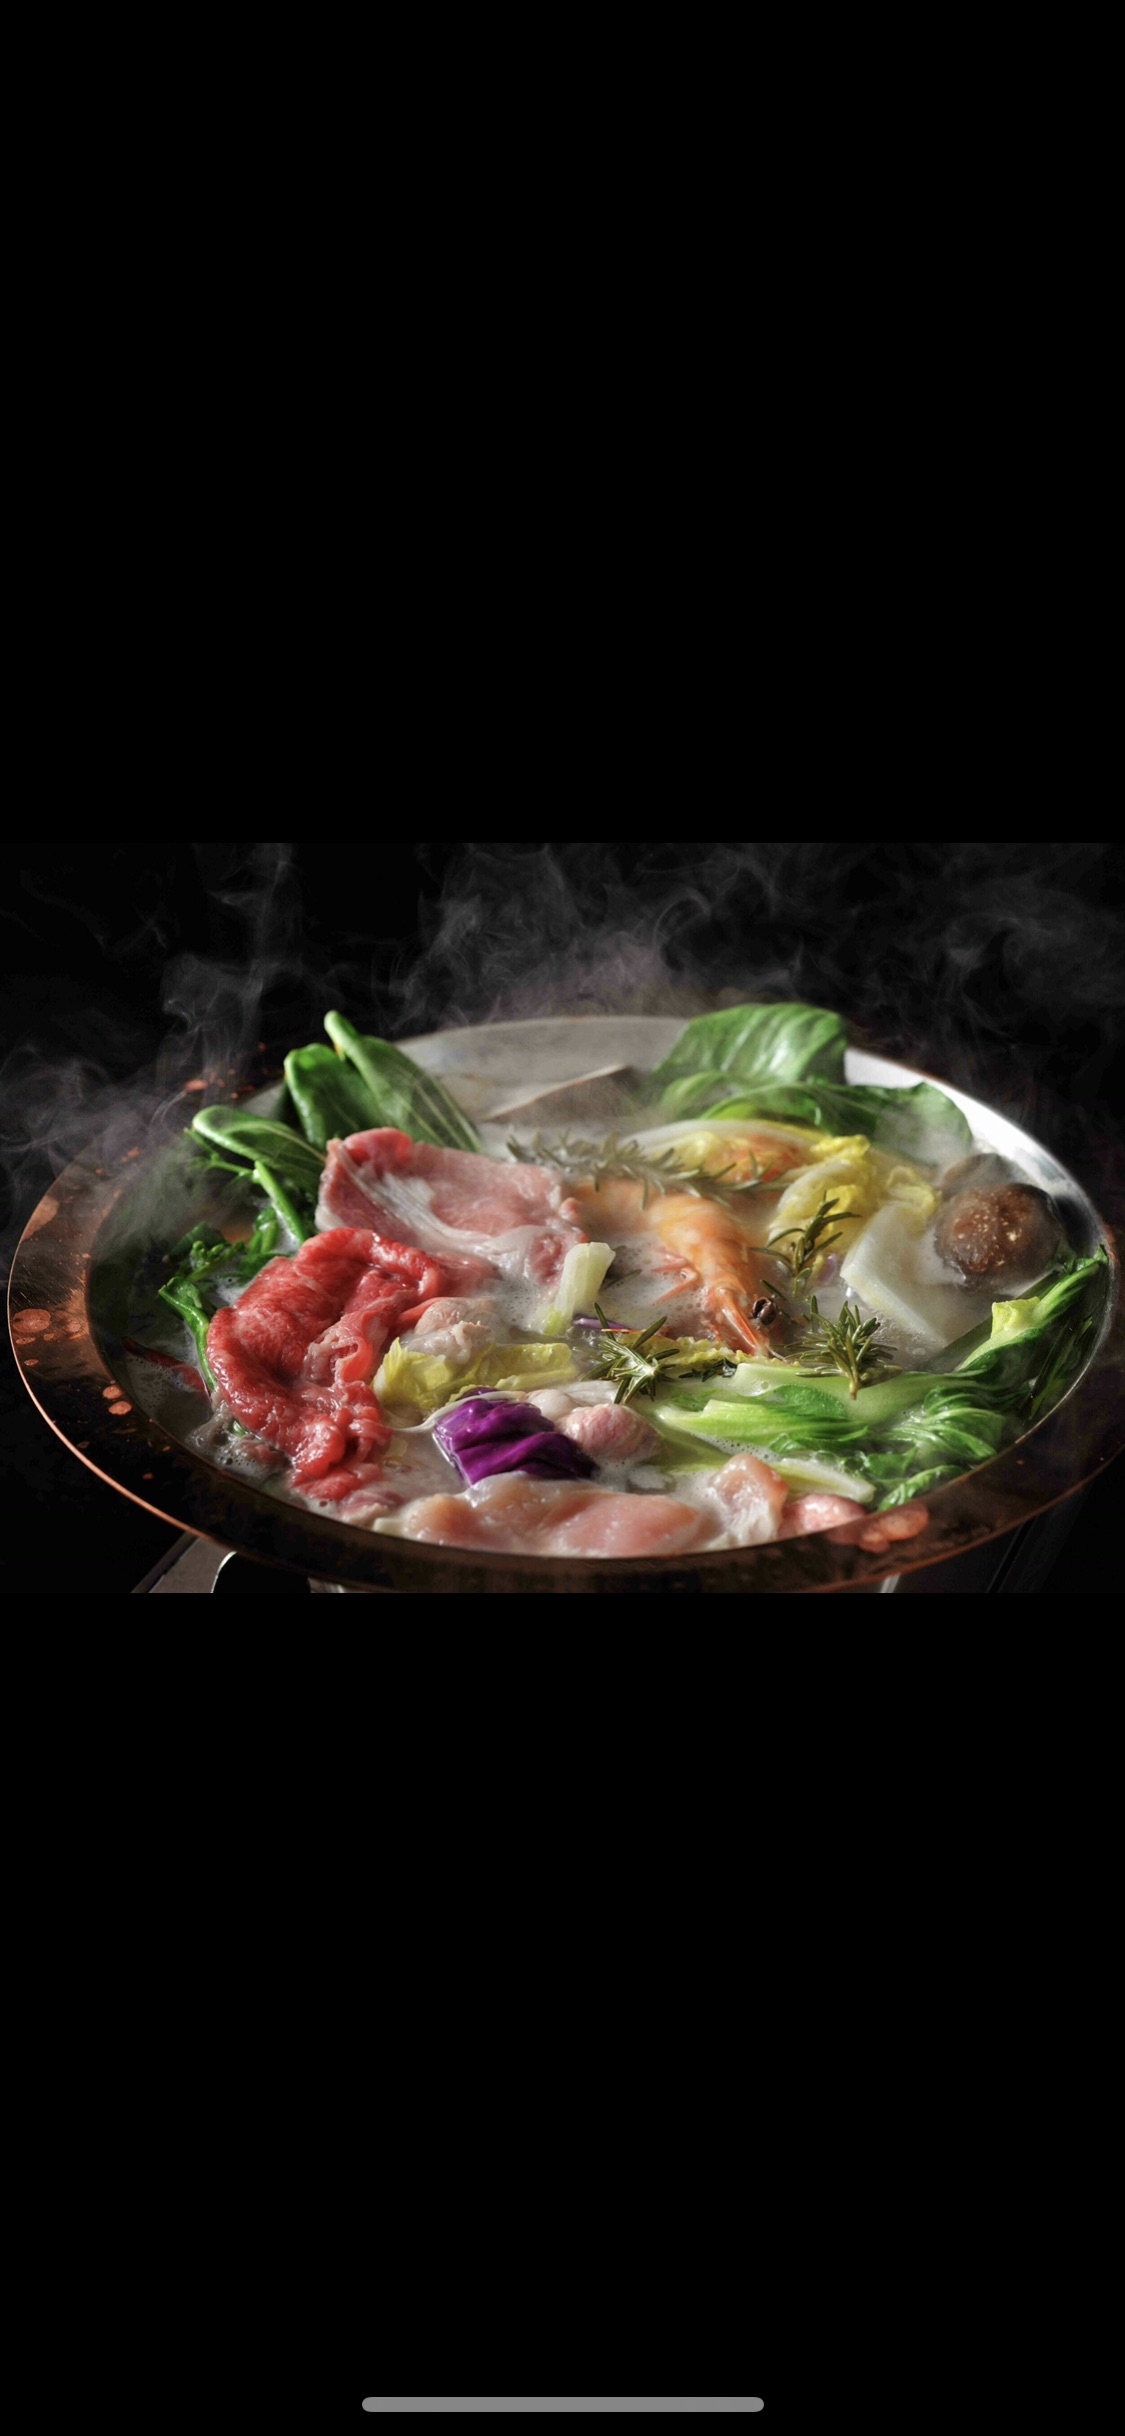 肉、海鮮の旨味を重ね合わせたスペシャルスープで味わう、特製火鍋がスペシャリテ。